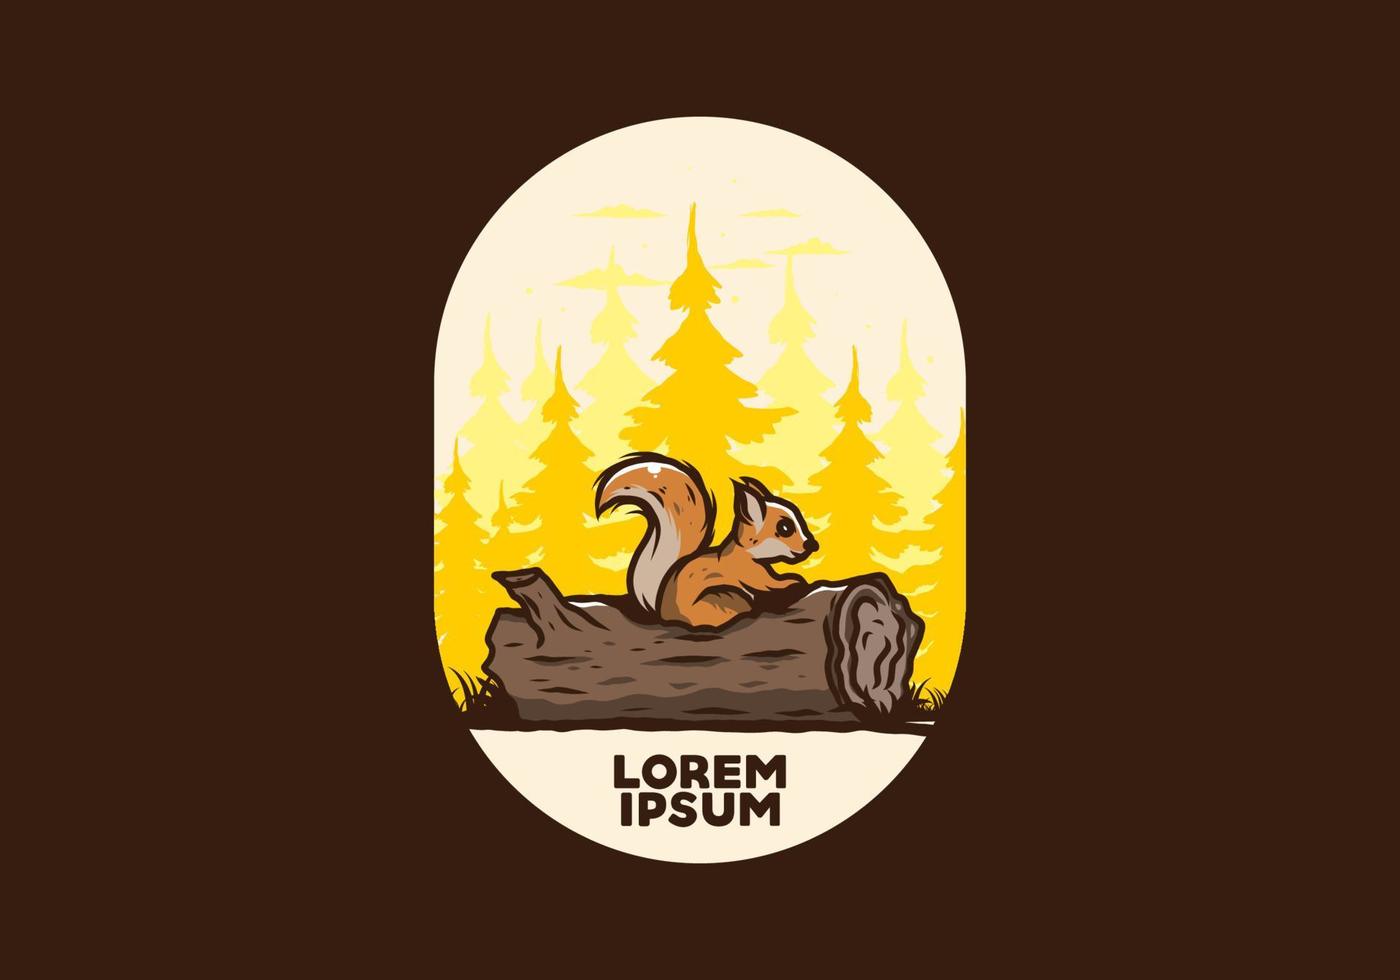 scoiattolo solitario che si nasconde in un'illustrazione del tronco d'albero morto vettore